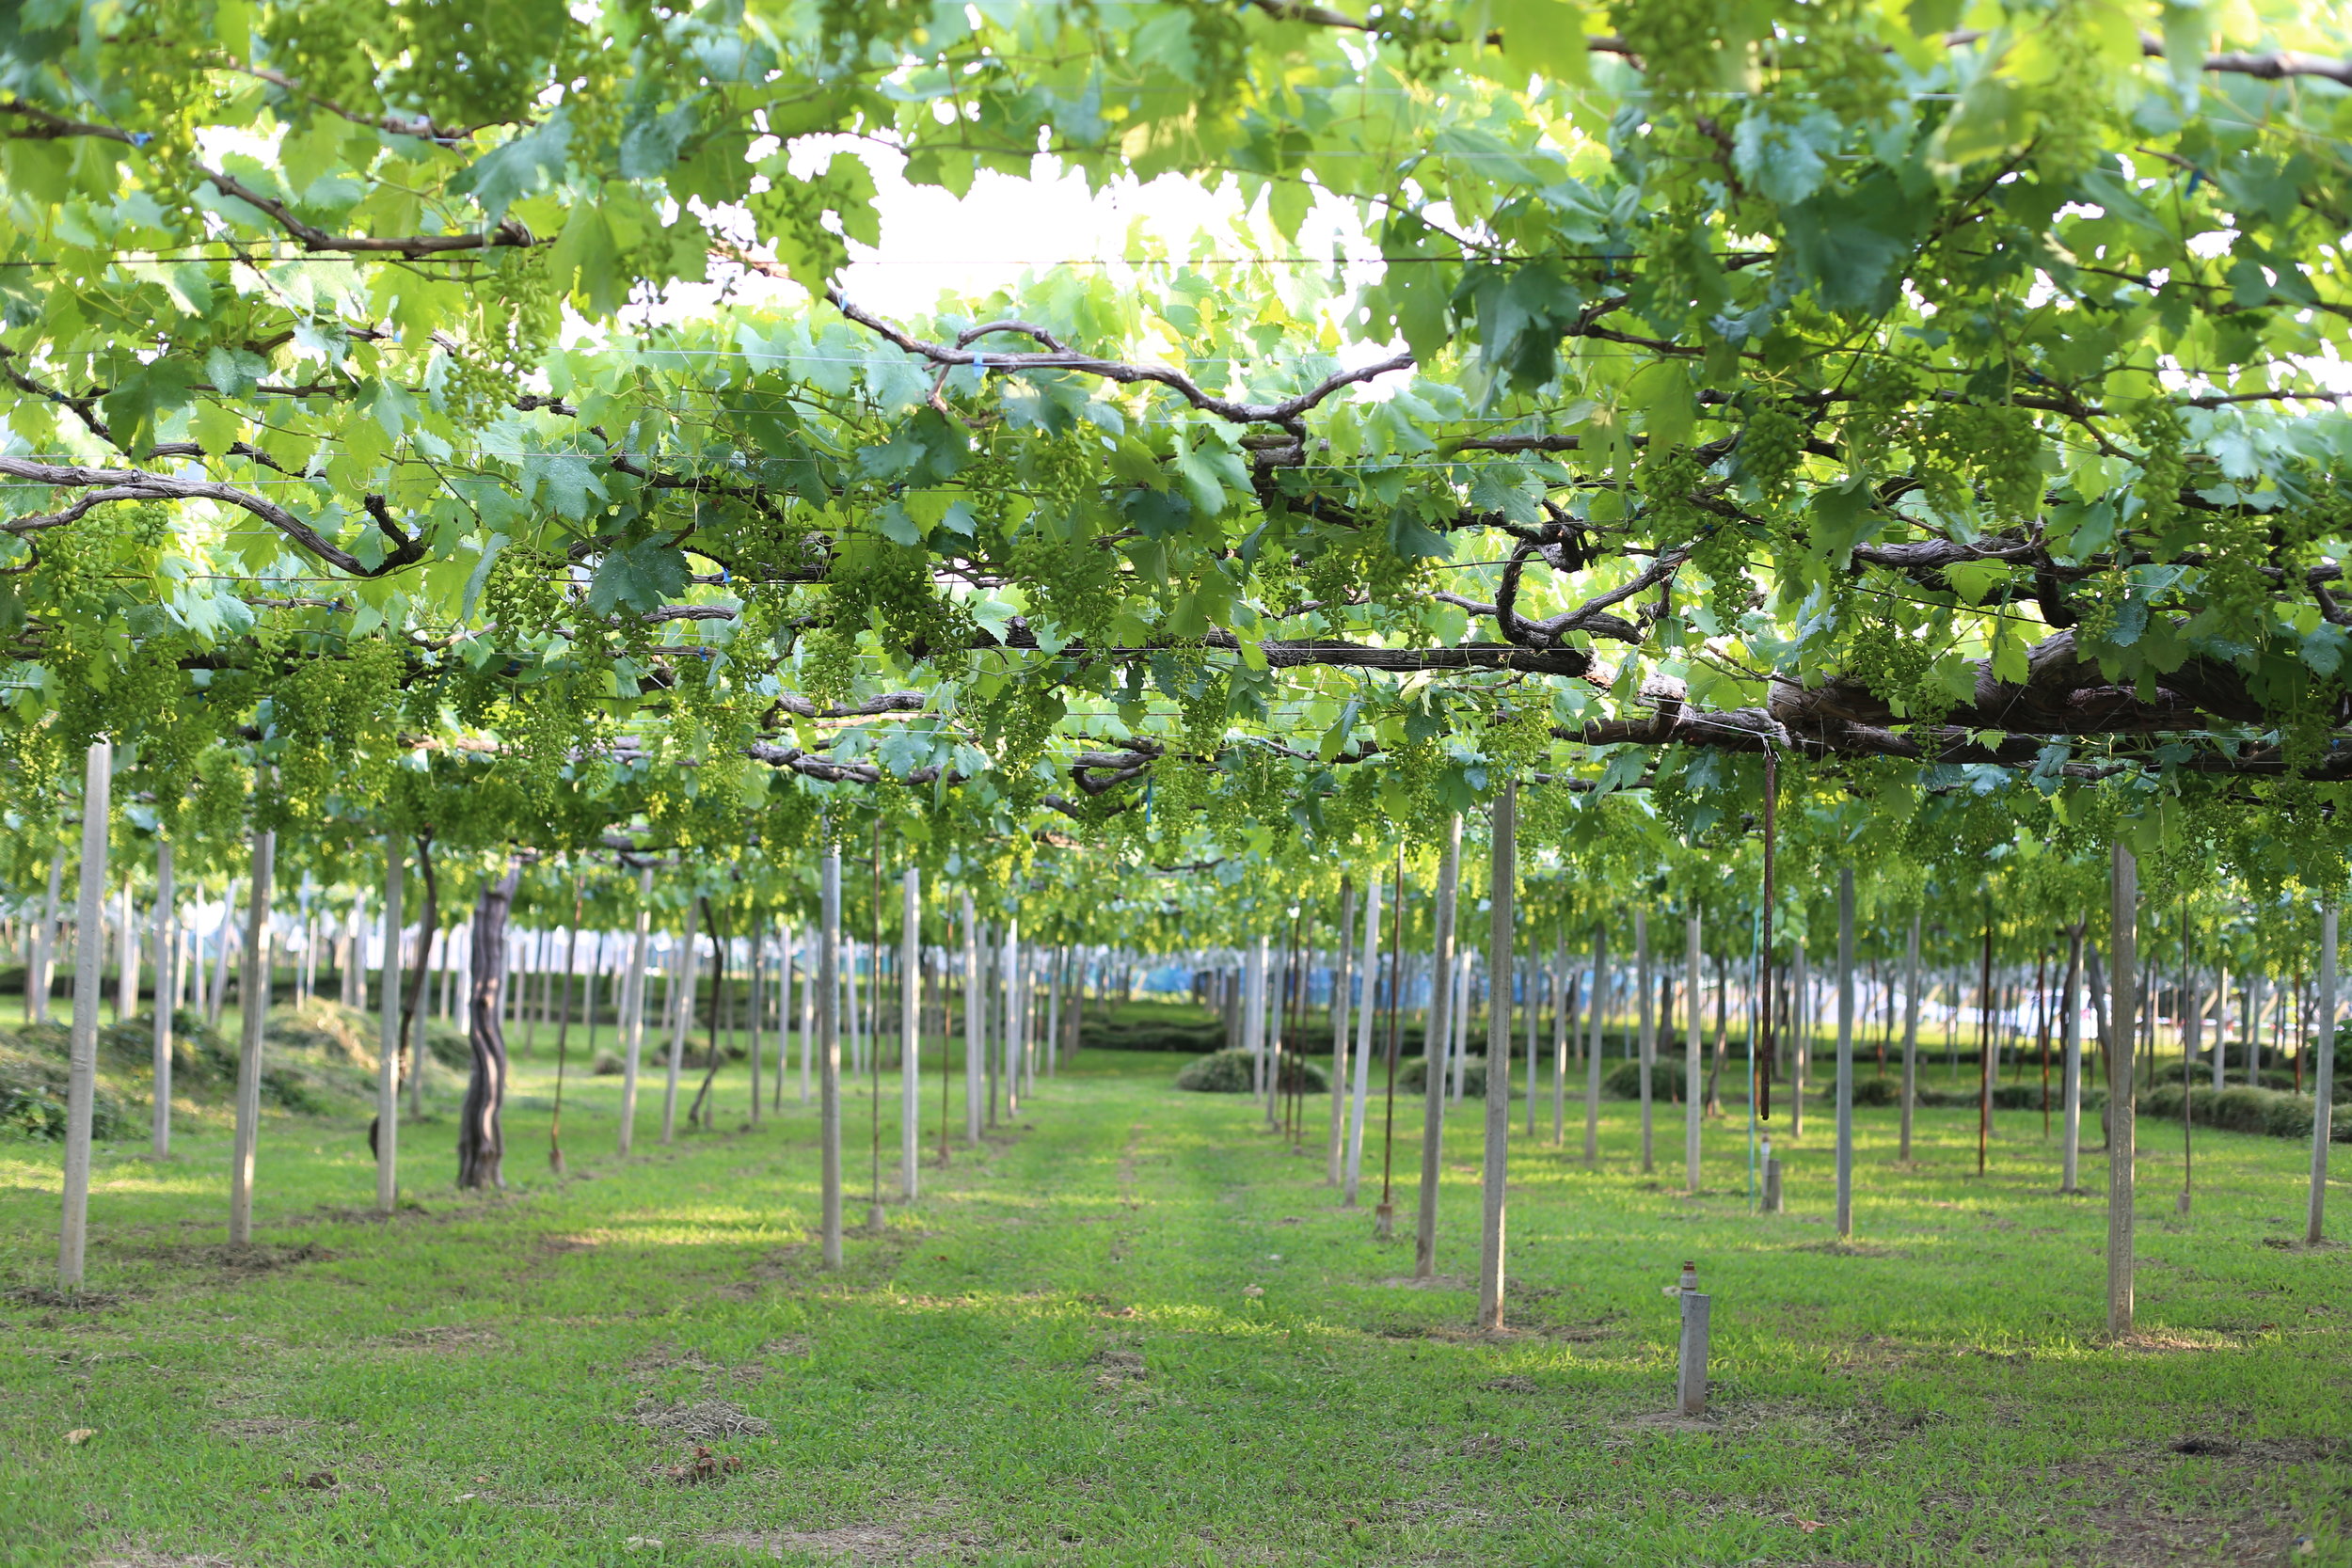 Koshu Valley_Japanese Wine Region_Pergola vineyard_Spring.JPG